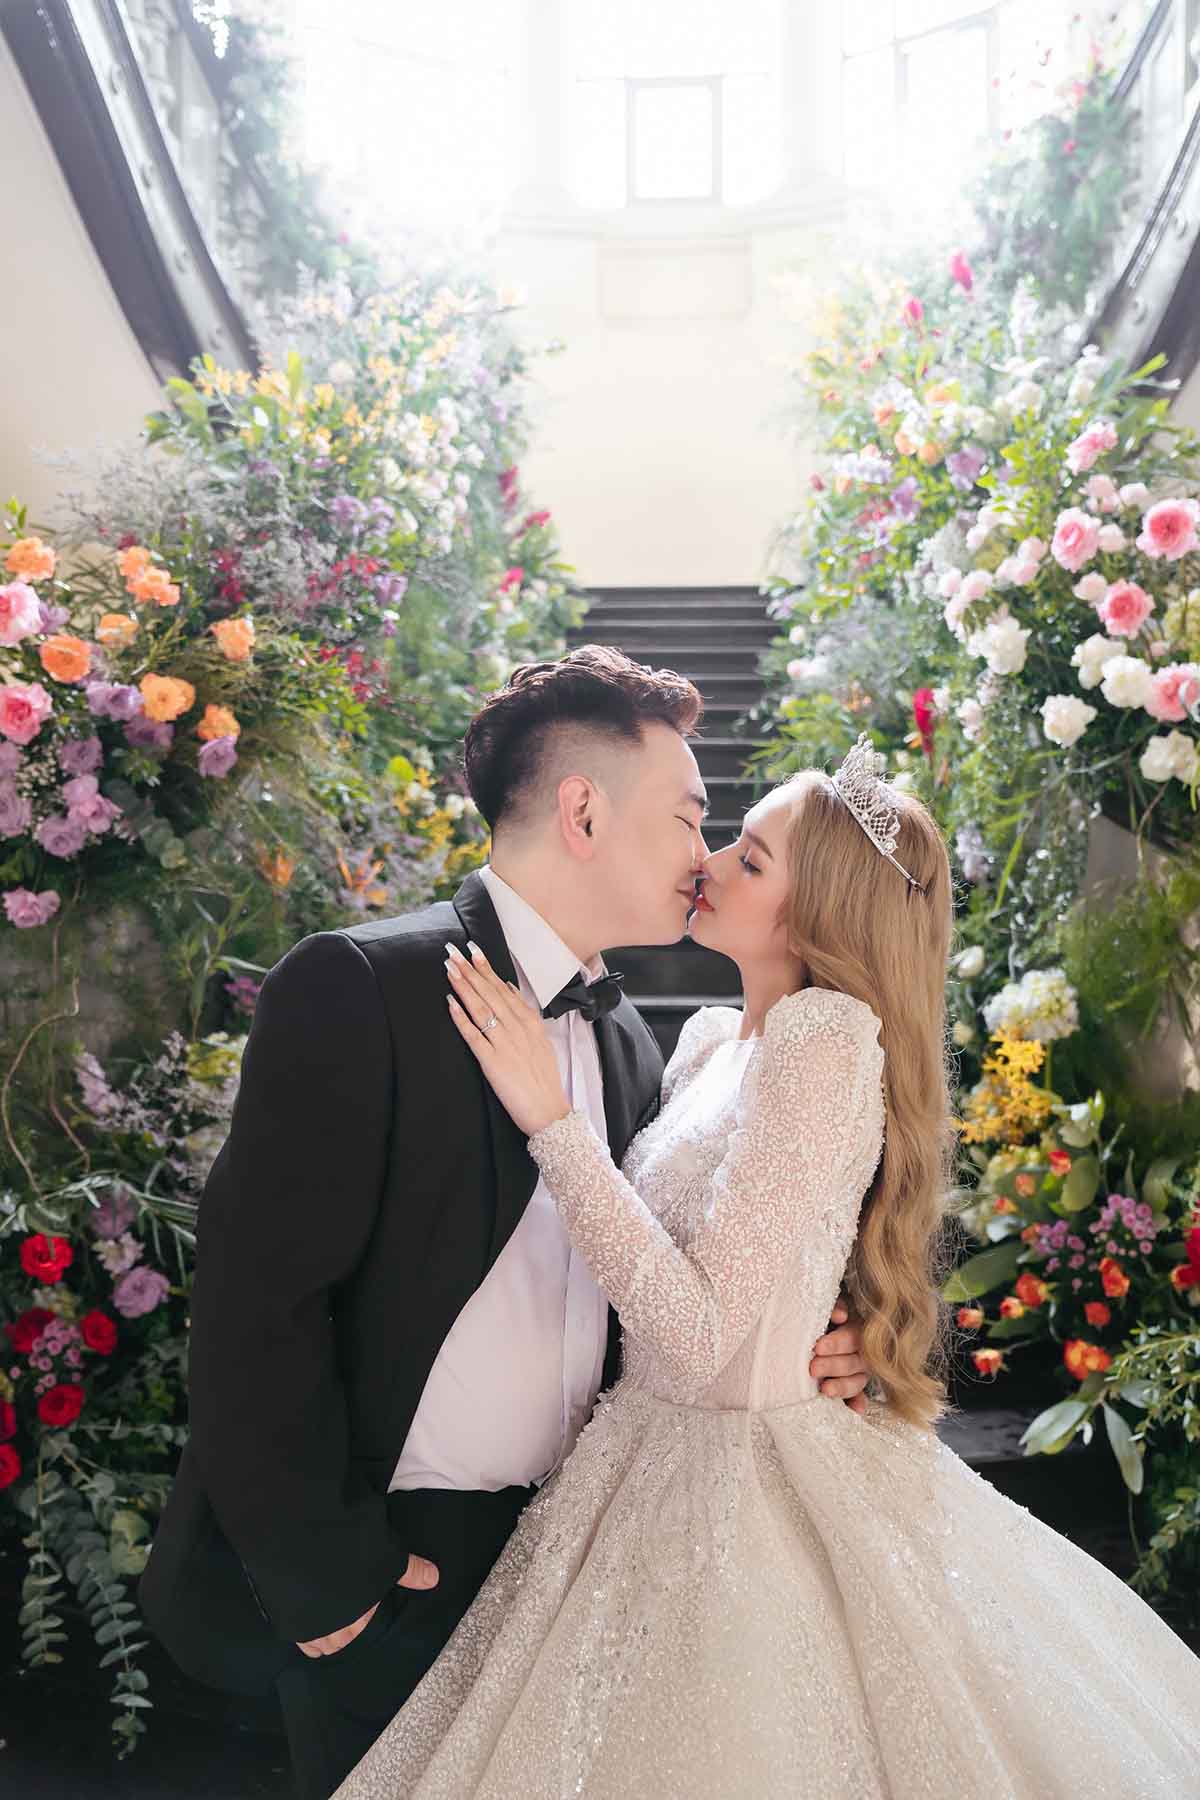 Cường Đô la và bạn gái cùng hội bạn “nhà giàu” dự đám cưới Diệp Lâm Anh |  Báo Dân trí